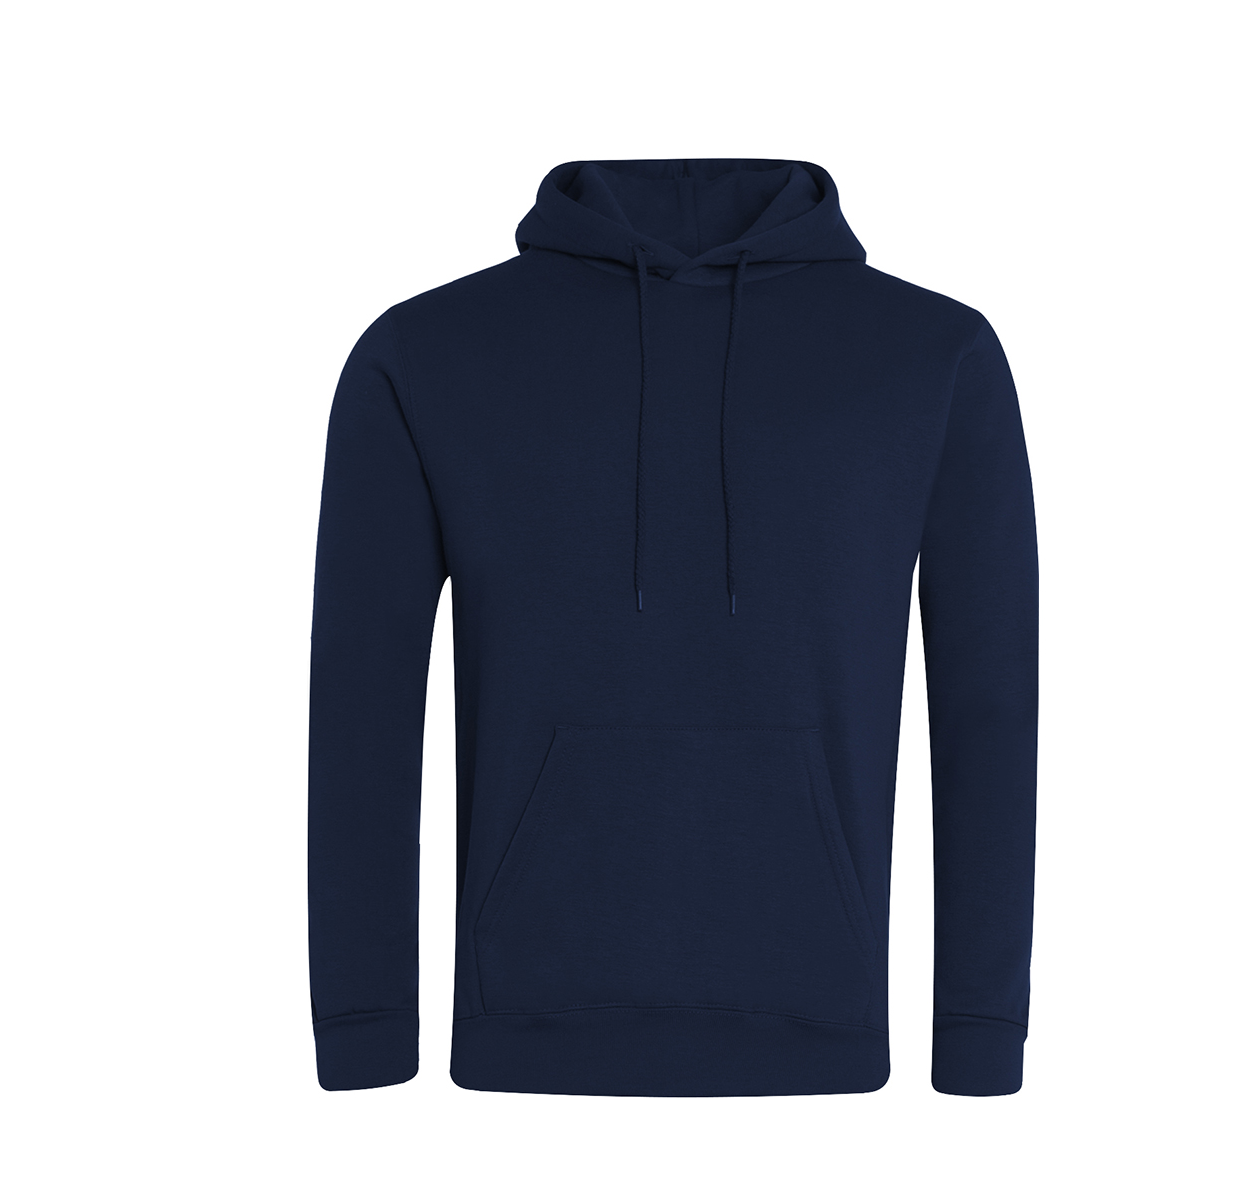 Saint Benedict Navy Hooded Sweatshirt w/Logo - Schoolwear Solutions